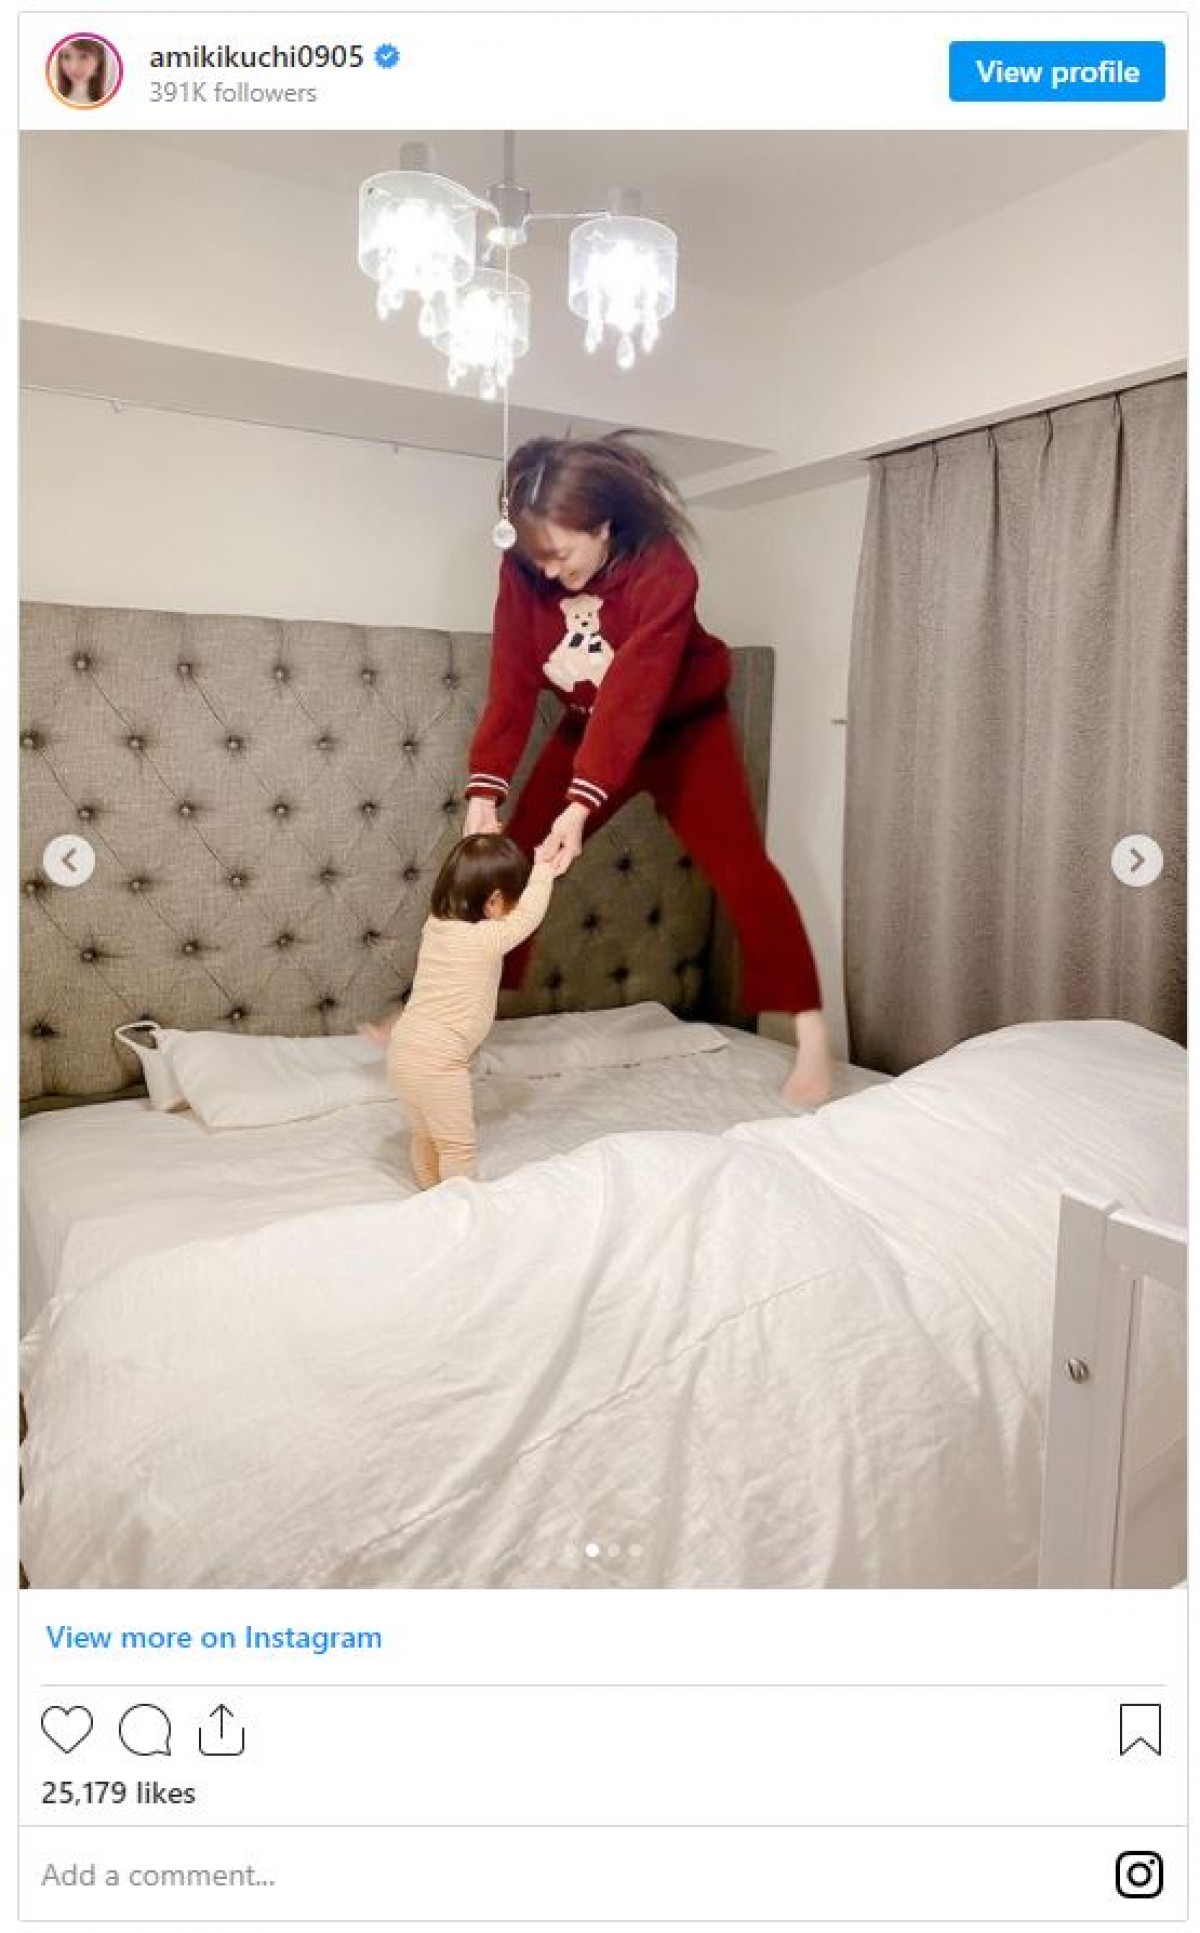 菊地亜美、愛娘と“大はしゃぎ”する姿 「元気でる写真」「凄いジャンプ力」の声